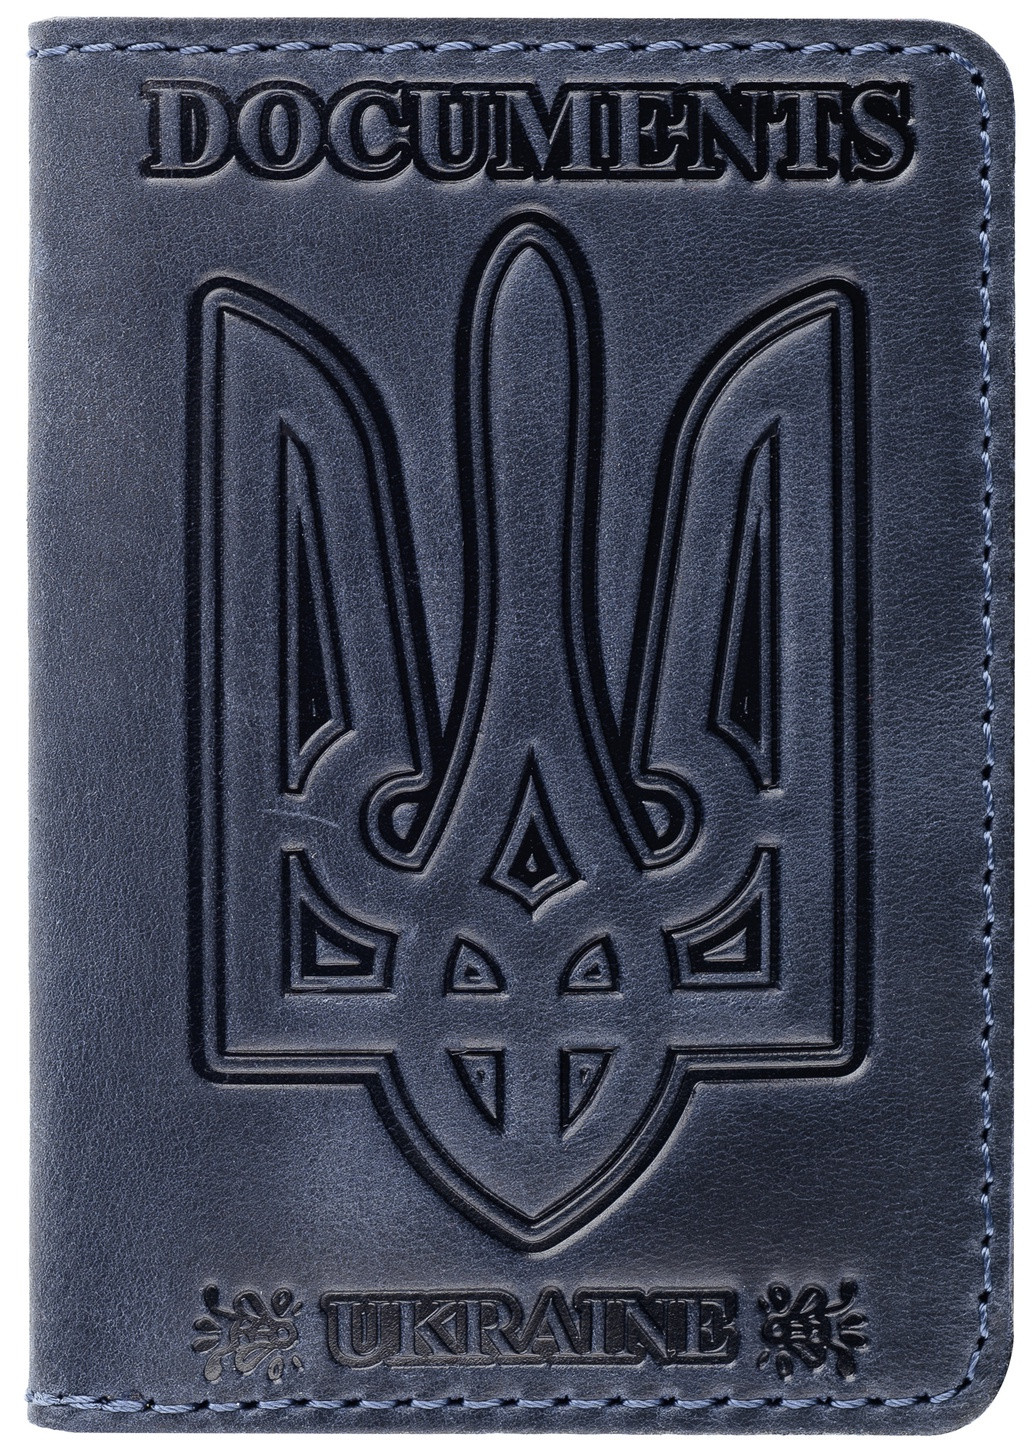 Кожаная обложка на id паспорт, для документов (права, техпаспорт) Villini 017 Синий Martec (259164681)